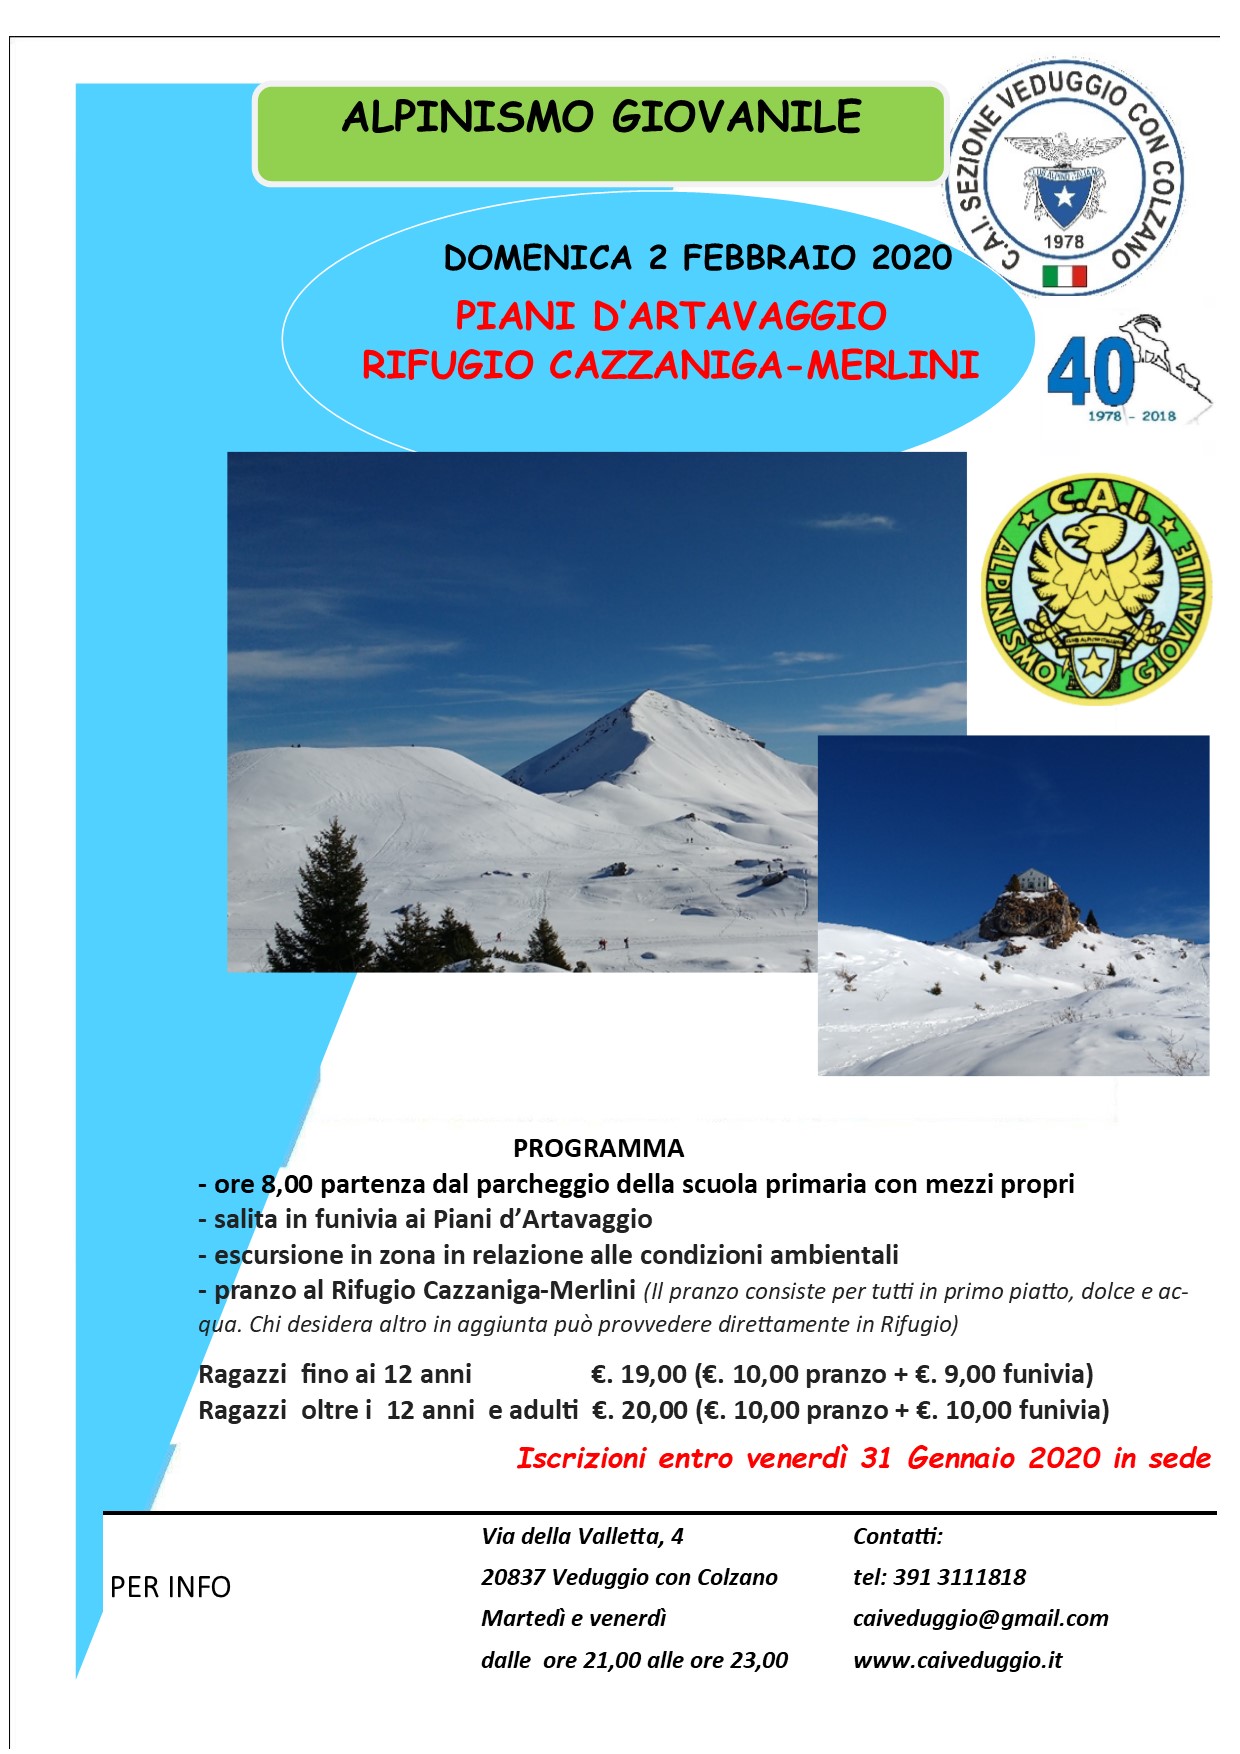 Domenica 2 febbraio 2020 – Alpinismo Giovanile – Rifugio Cazzaniga/Merlini